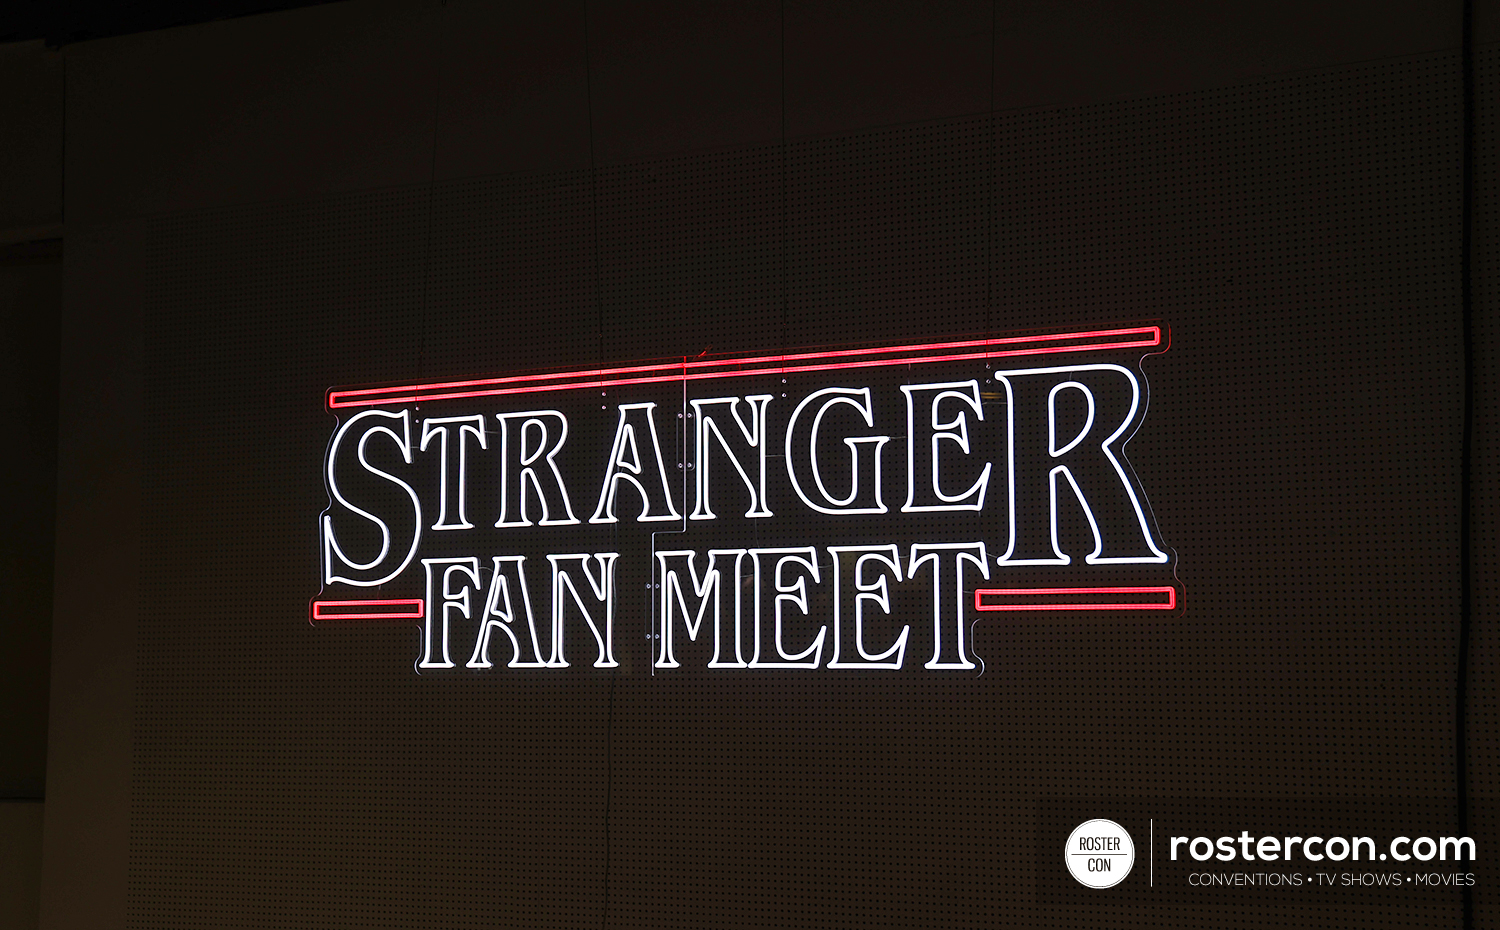 Stranger Things - Stranger Fan Meet 6